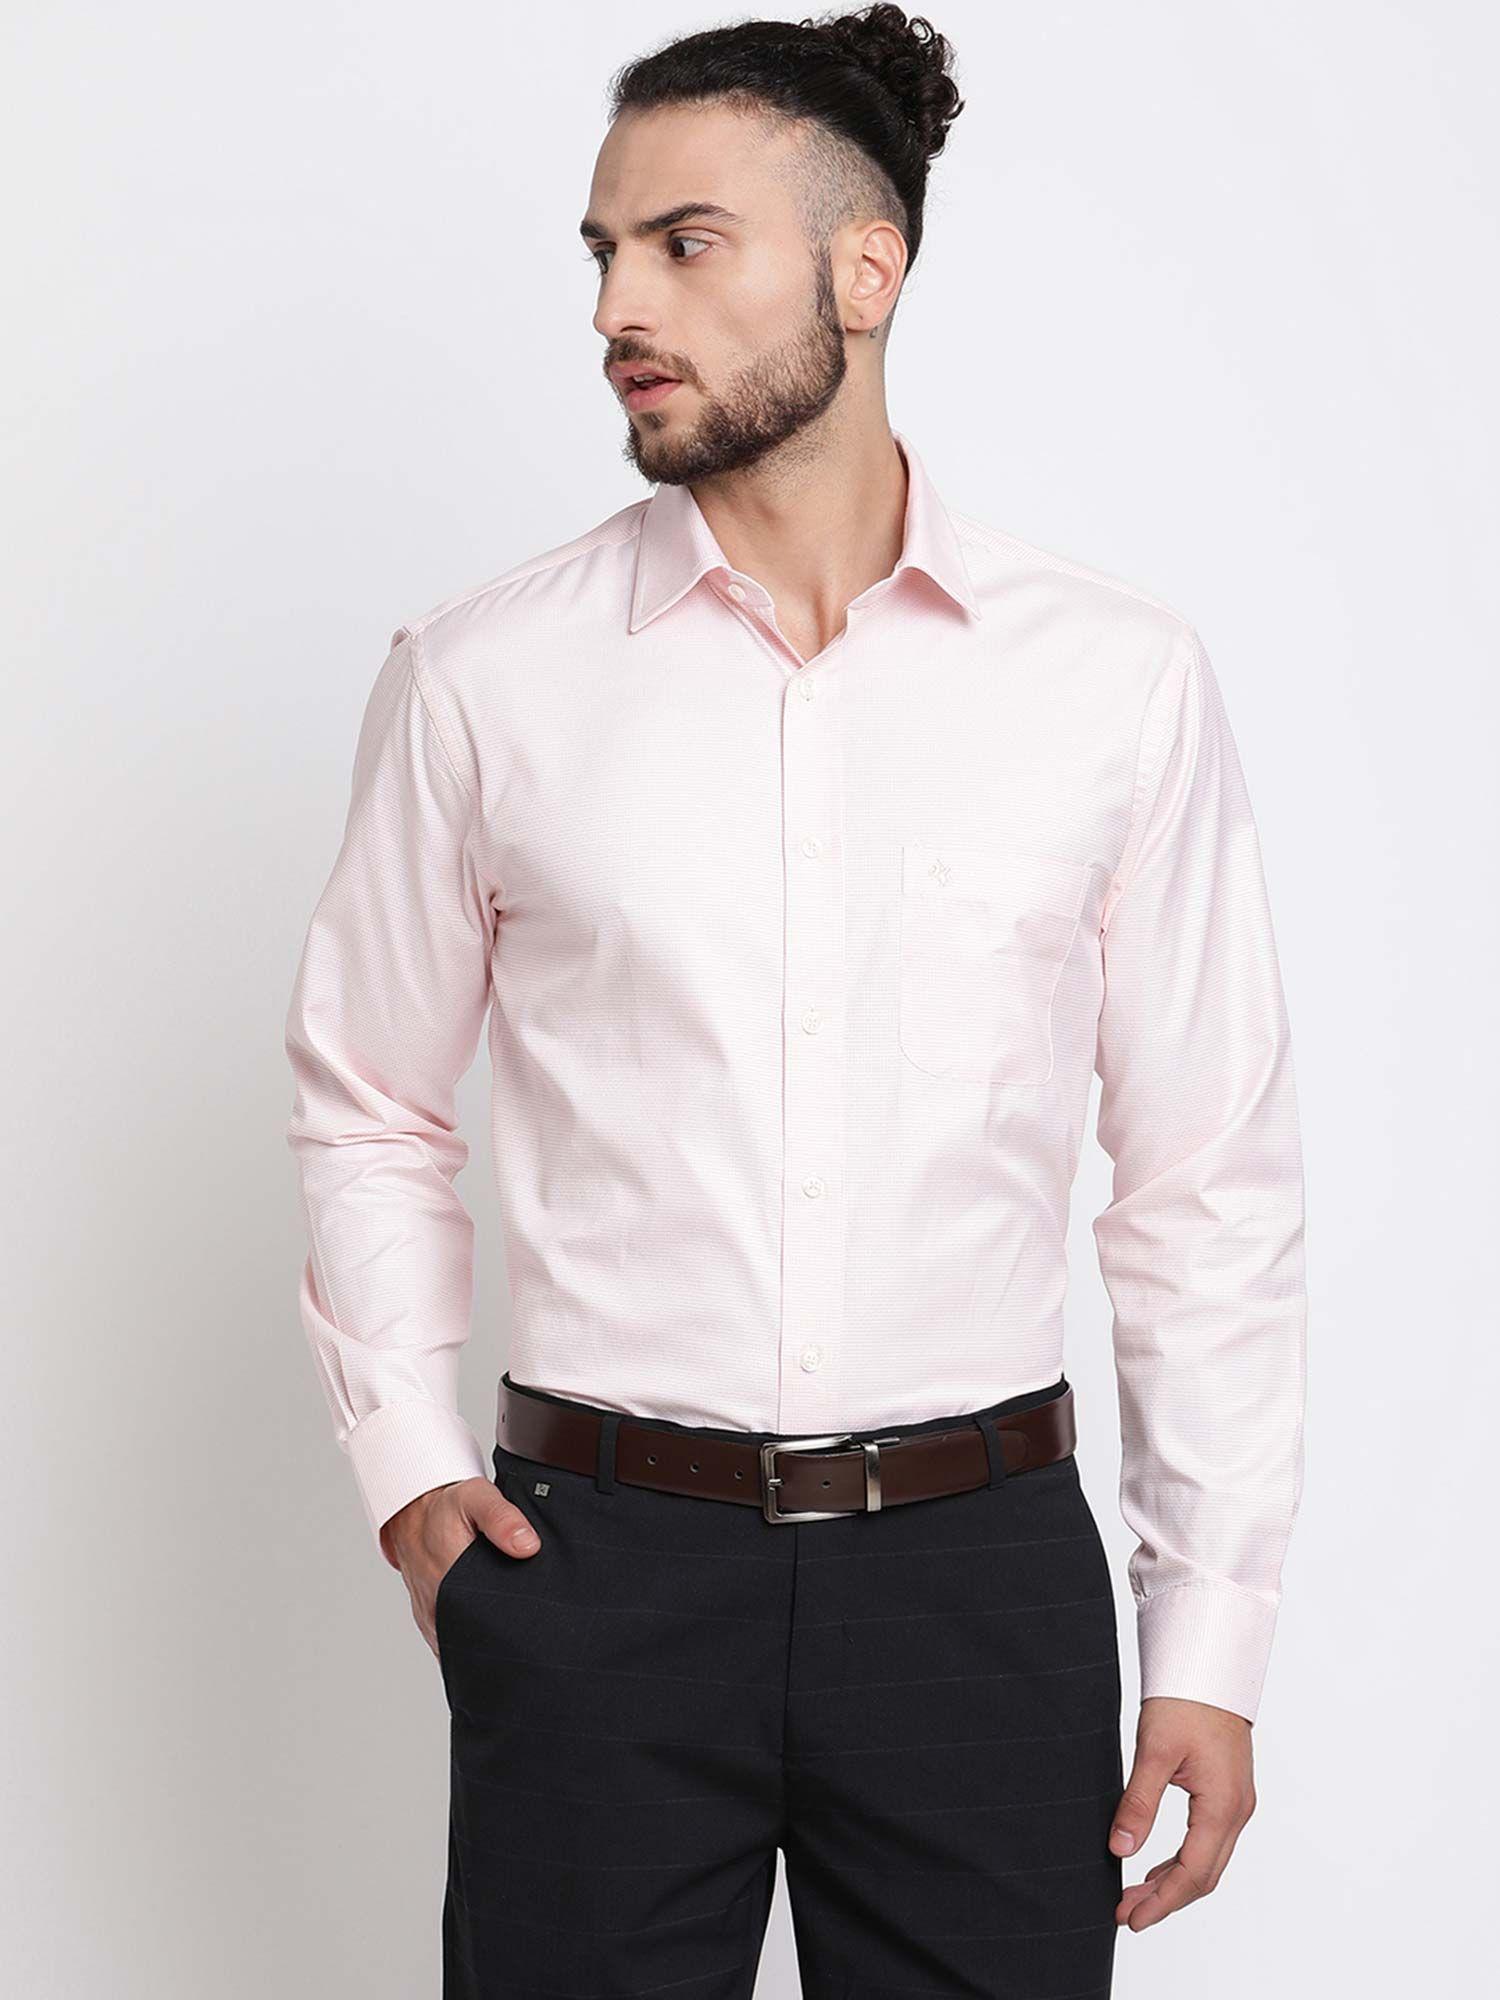 men's pink formal shirt